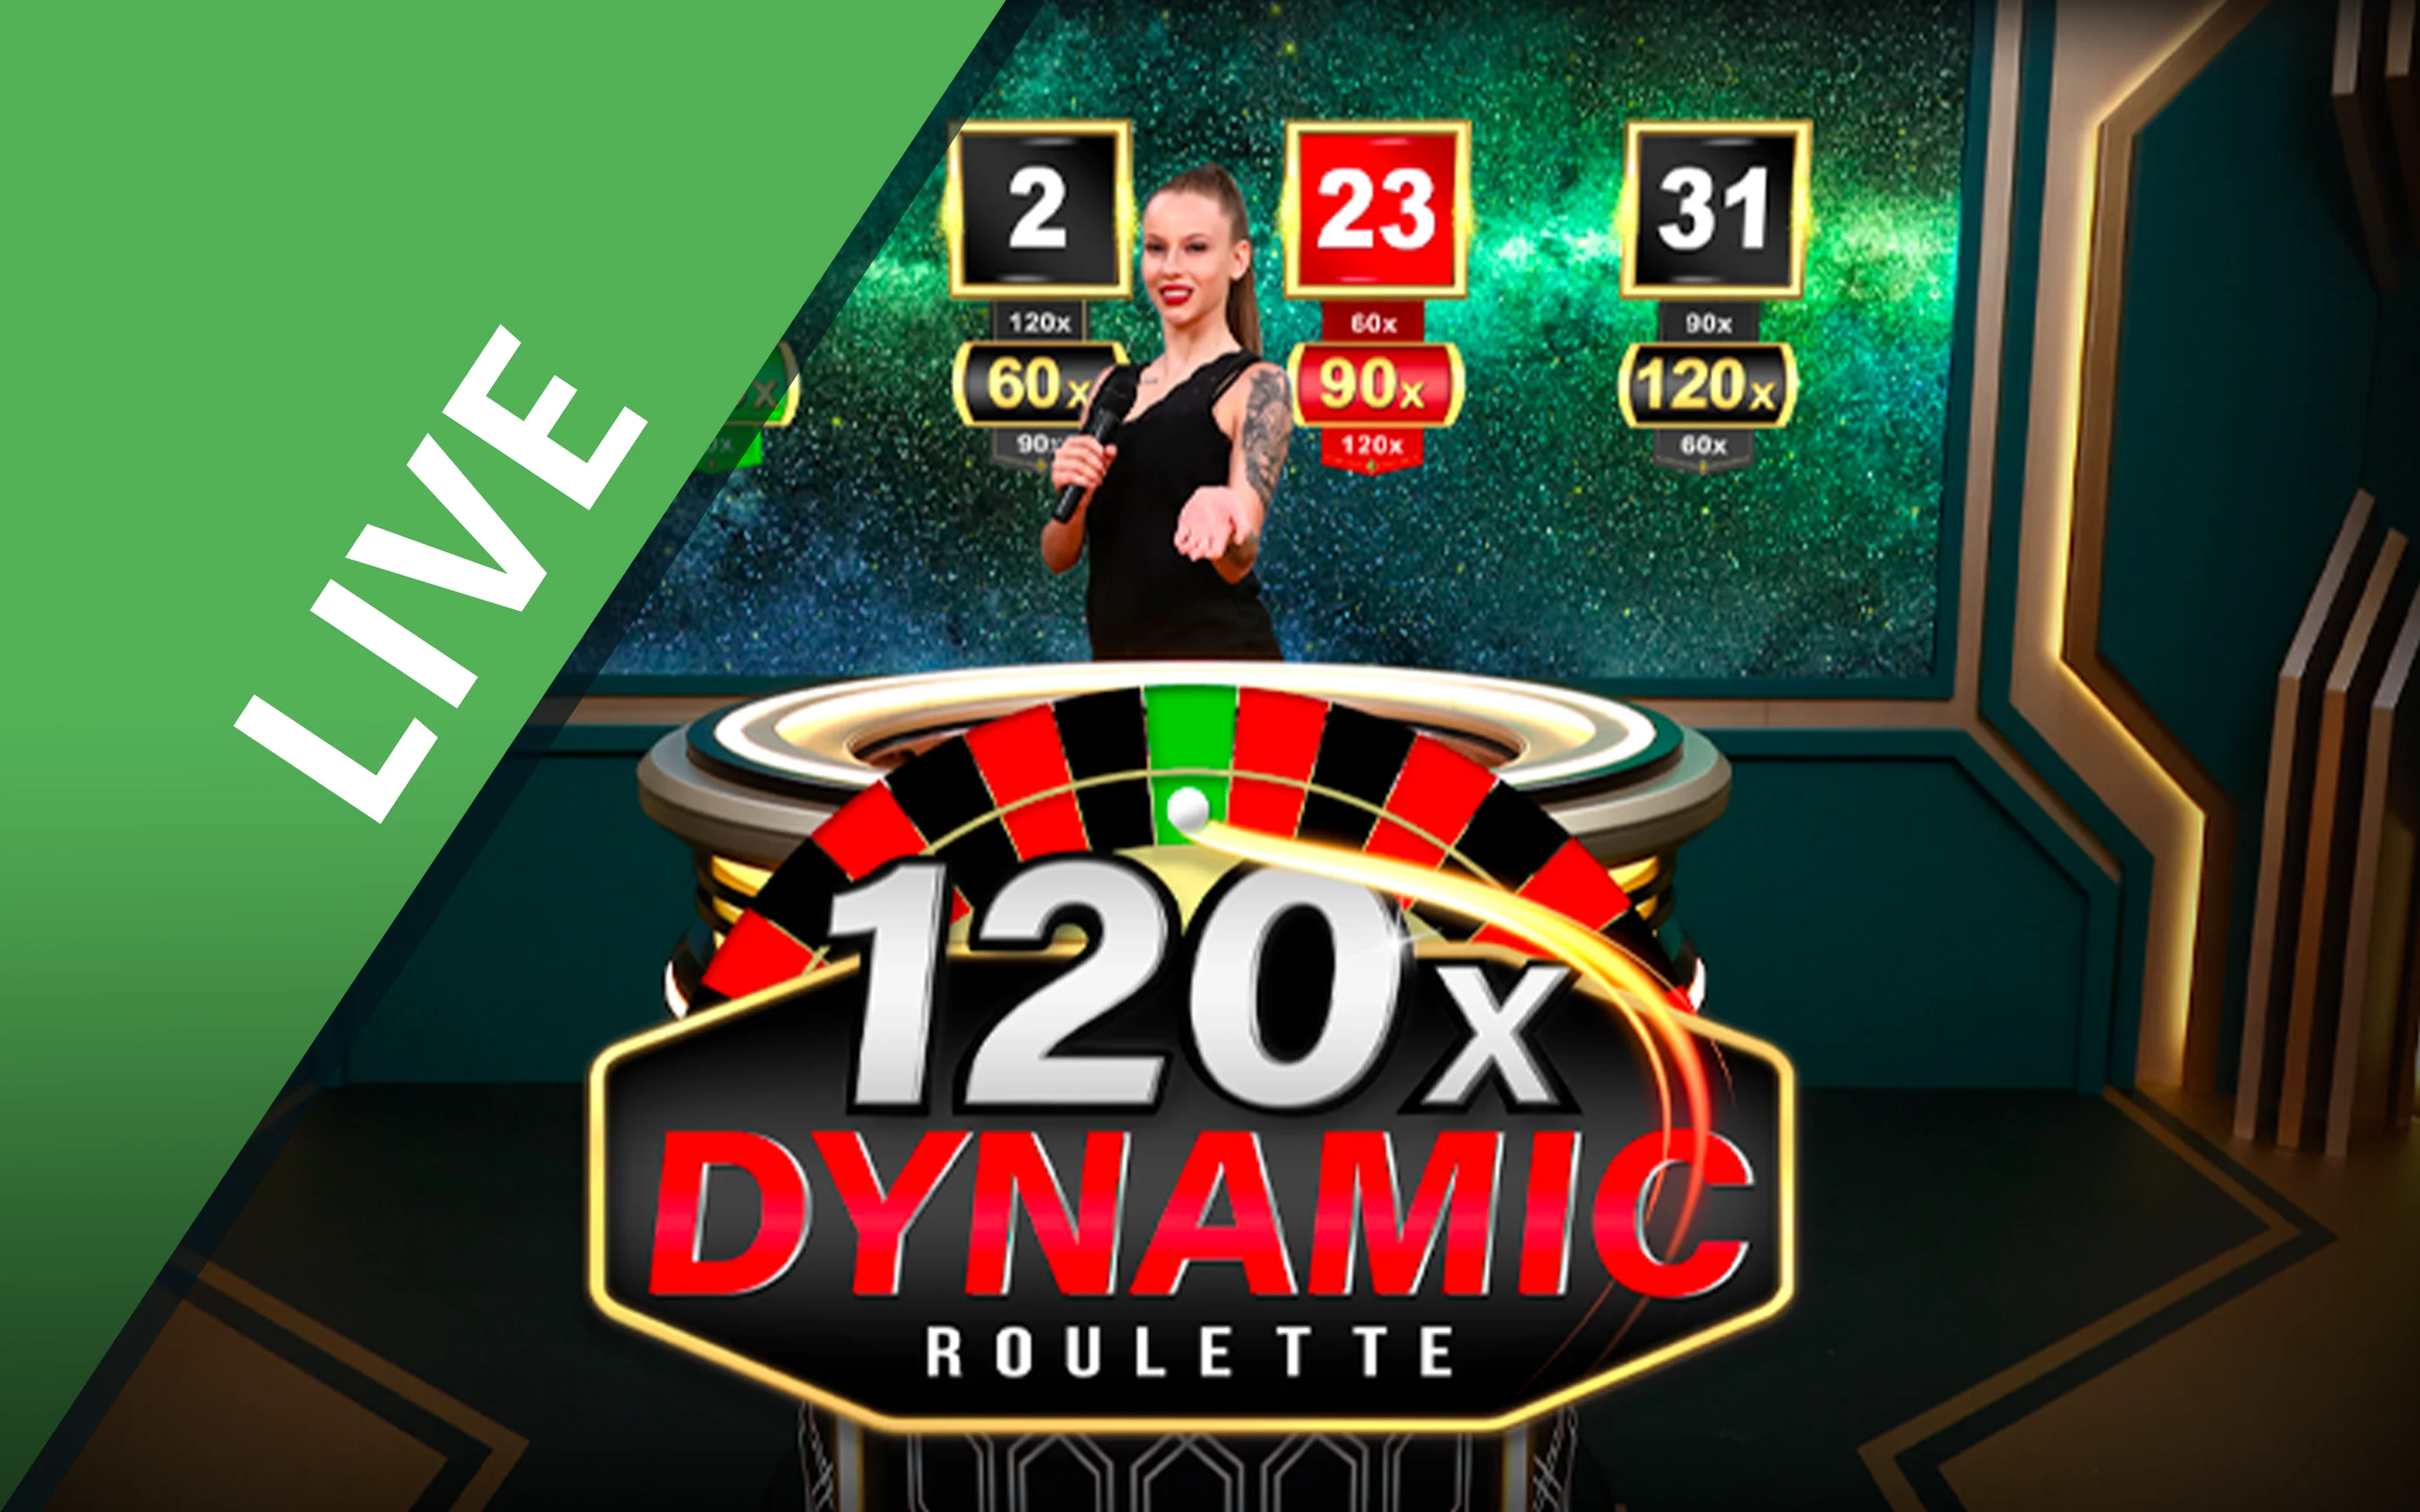 Juega a Dynamic Roulette 120x en el casino en línea de Starcasino.be